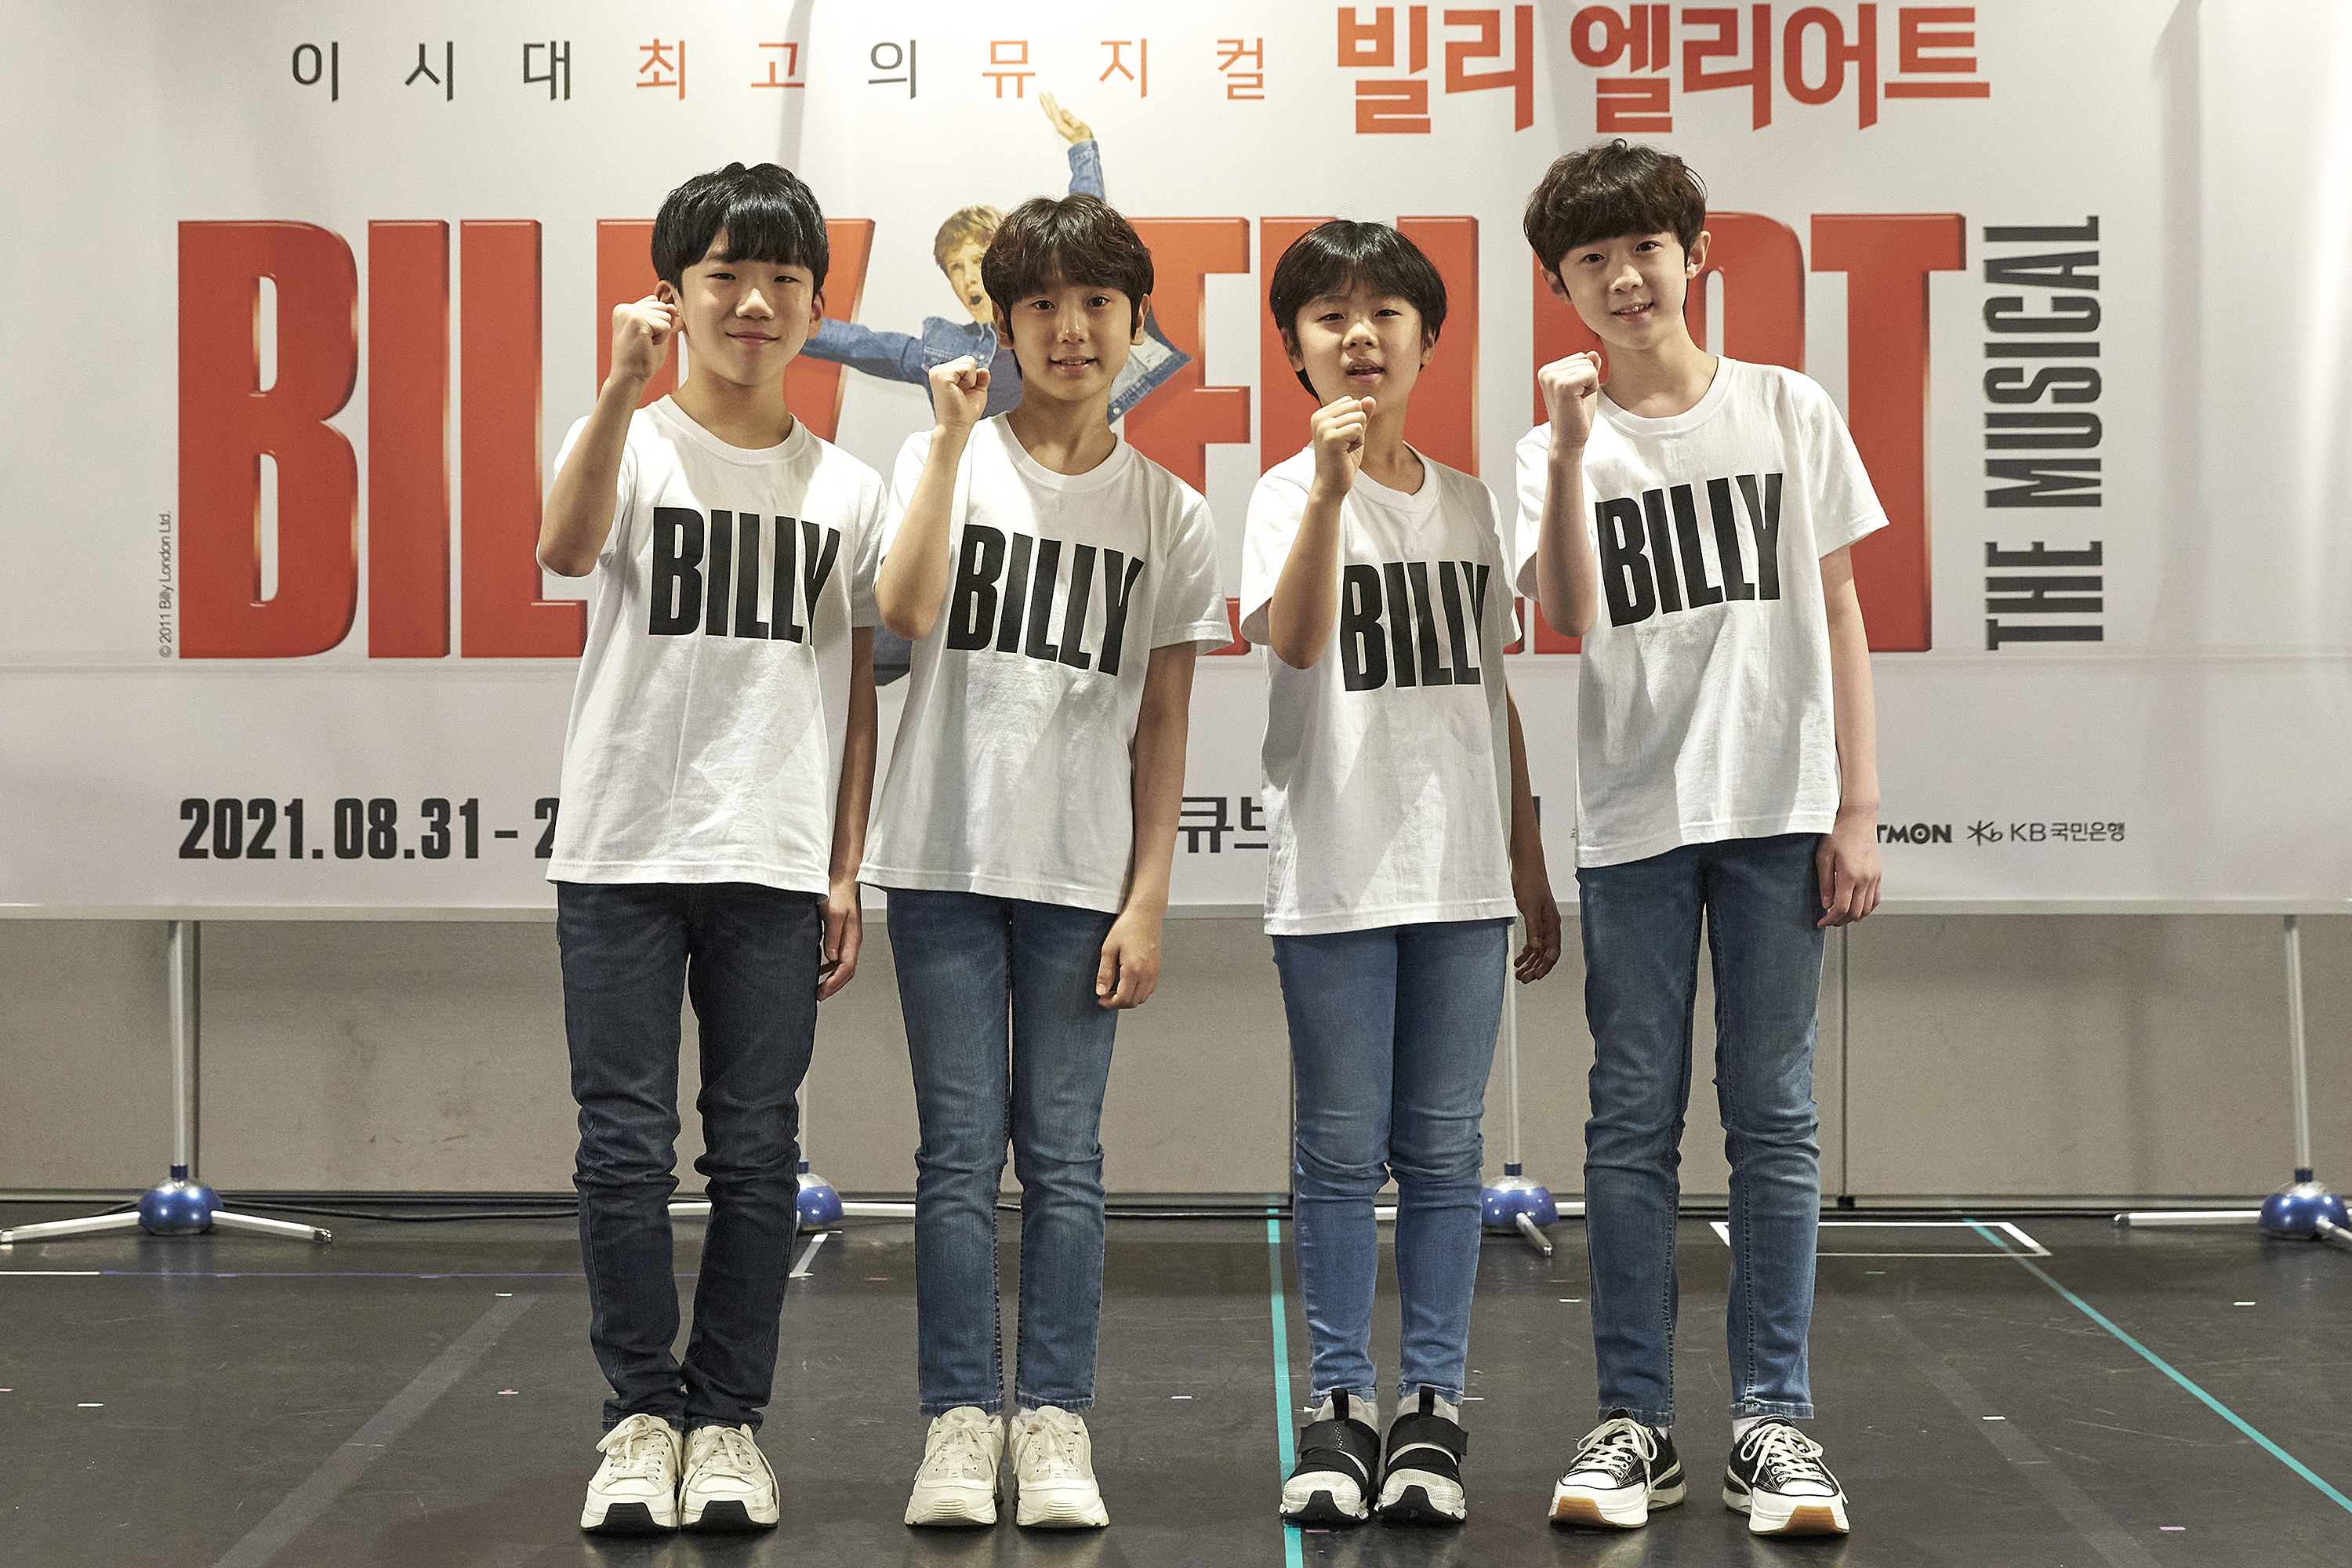 오는 31일 개막하는 뮤지컬 ‘빌리 엘리어트’에서 빌리를 연기하는 이우진, 김시훈, 주현준, 전강혁(왼쪽부터)군.  신시컴퍼니 제공